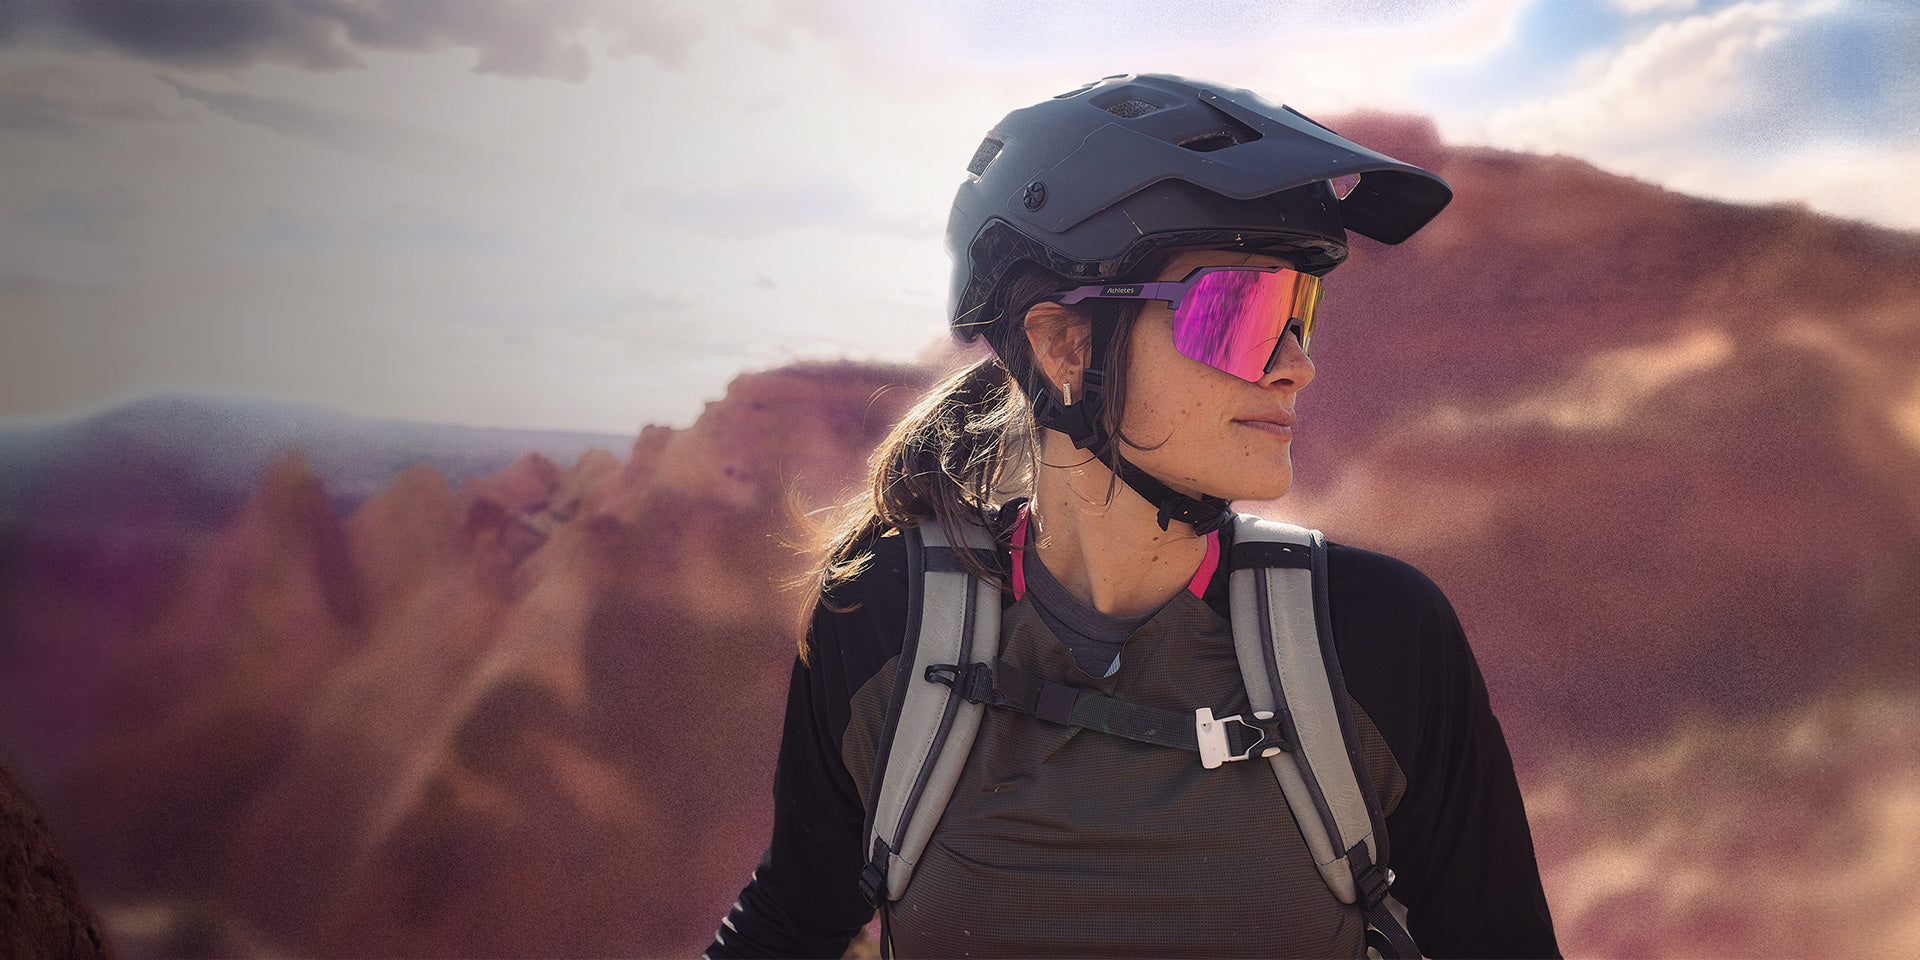 Bikerin mit stylischer Sportsonnenbrille und Helm vor bergiger Landschaft.